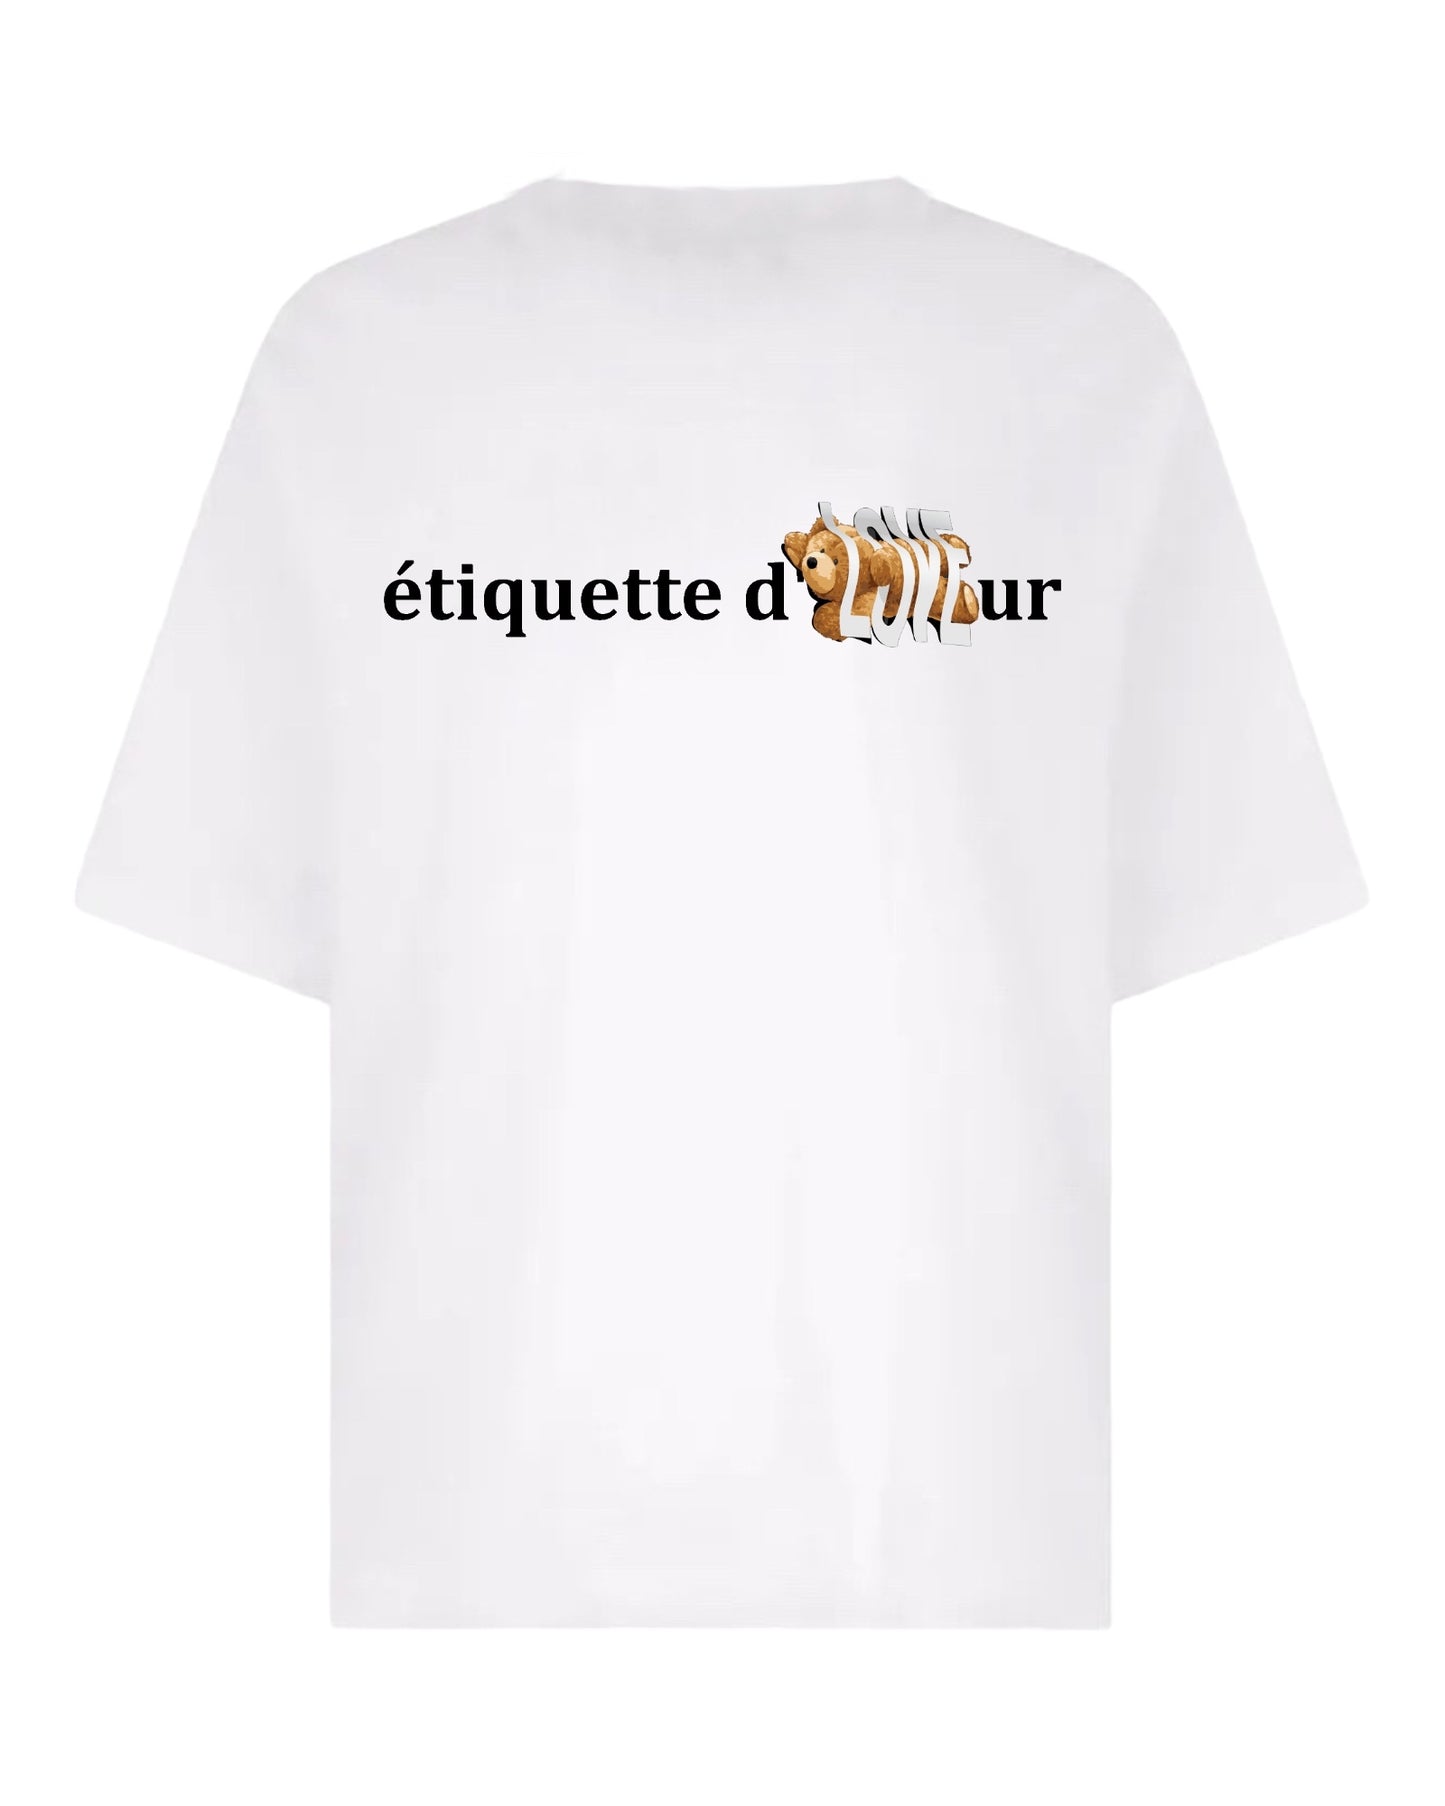 XLuxe T-Shirt #0040